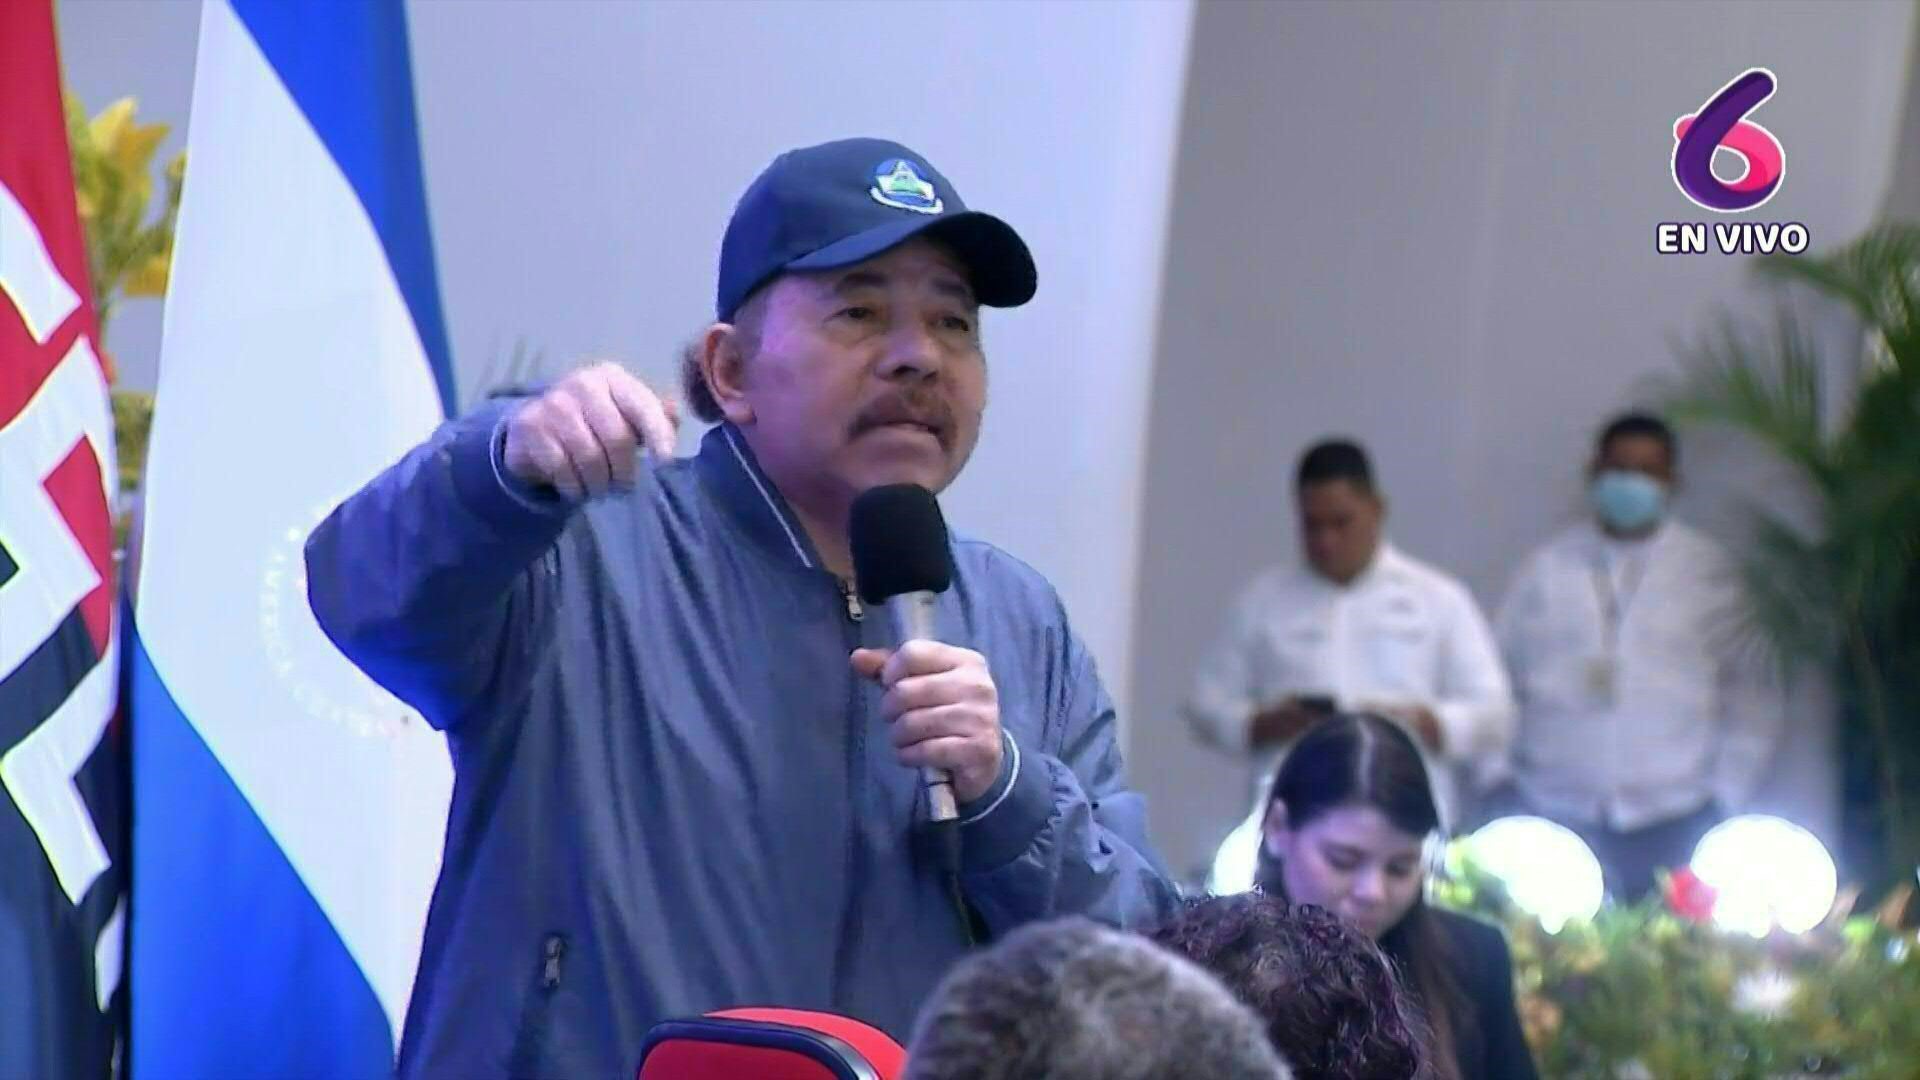 El presidente de Nicaragua, Daniel Ortega, reclamó el lunes al gobierno de Argentina por la retención de un avión venezolano y de su tripulación a pedido de Estados Unidos, y pidió su inmediata liberación.